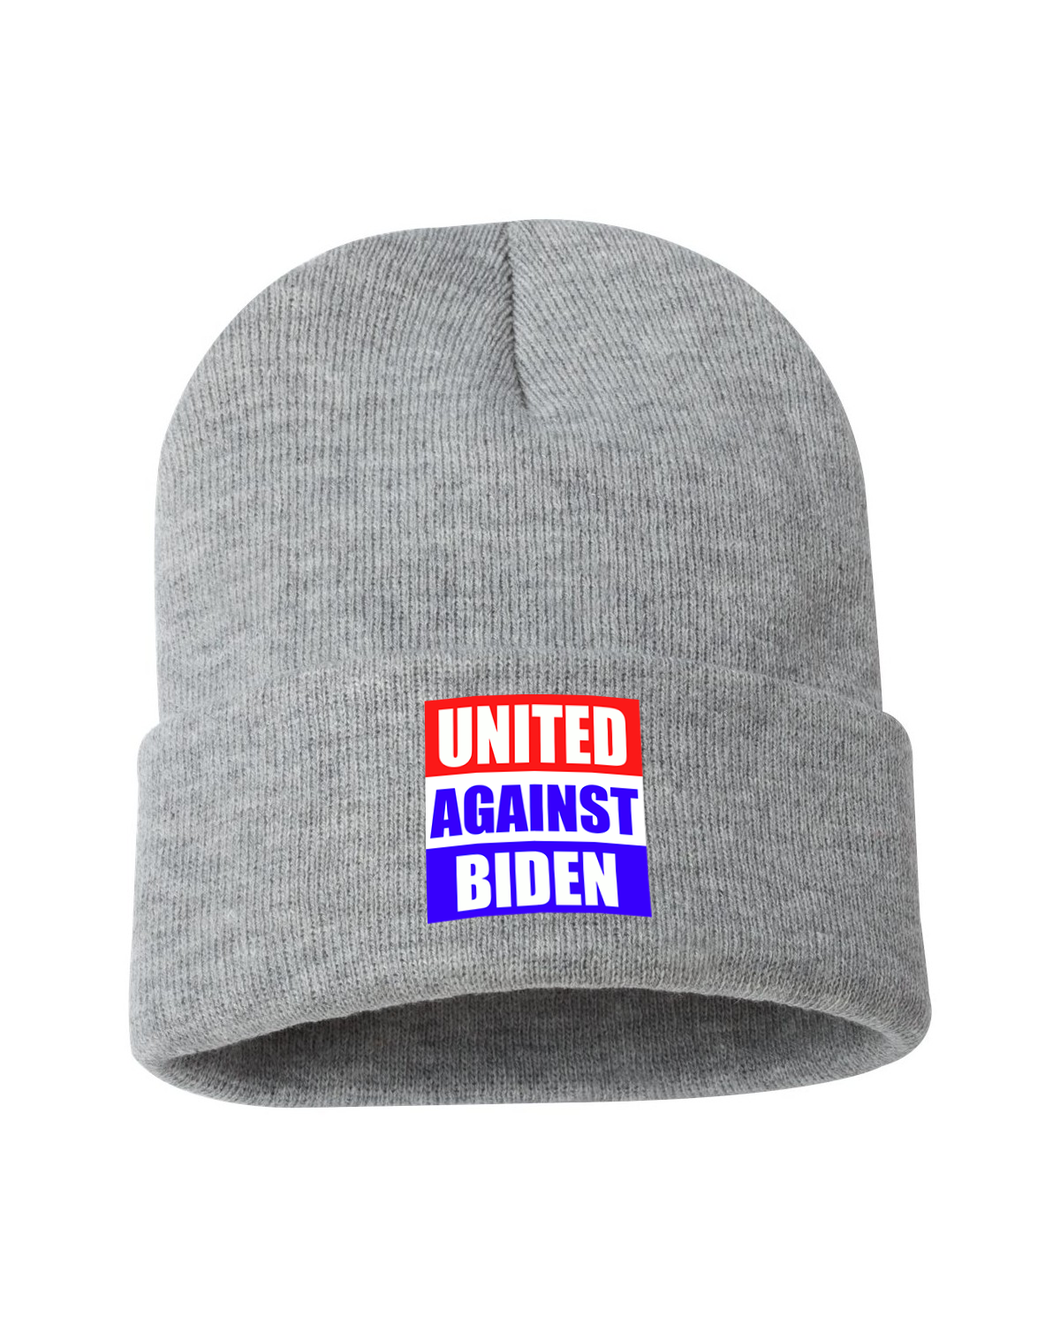 United Against Biden' Knit Beanie!